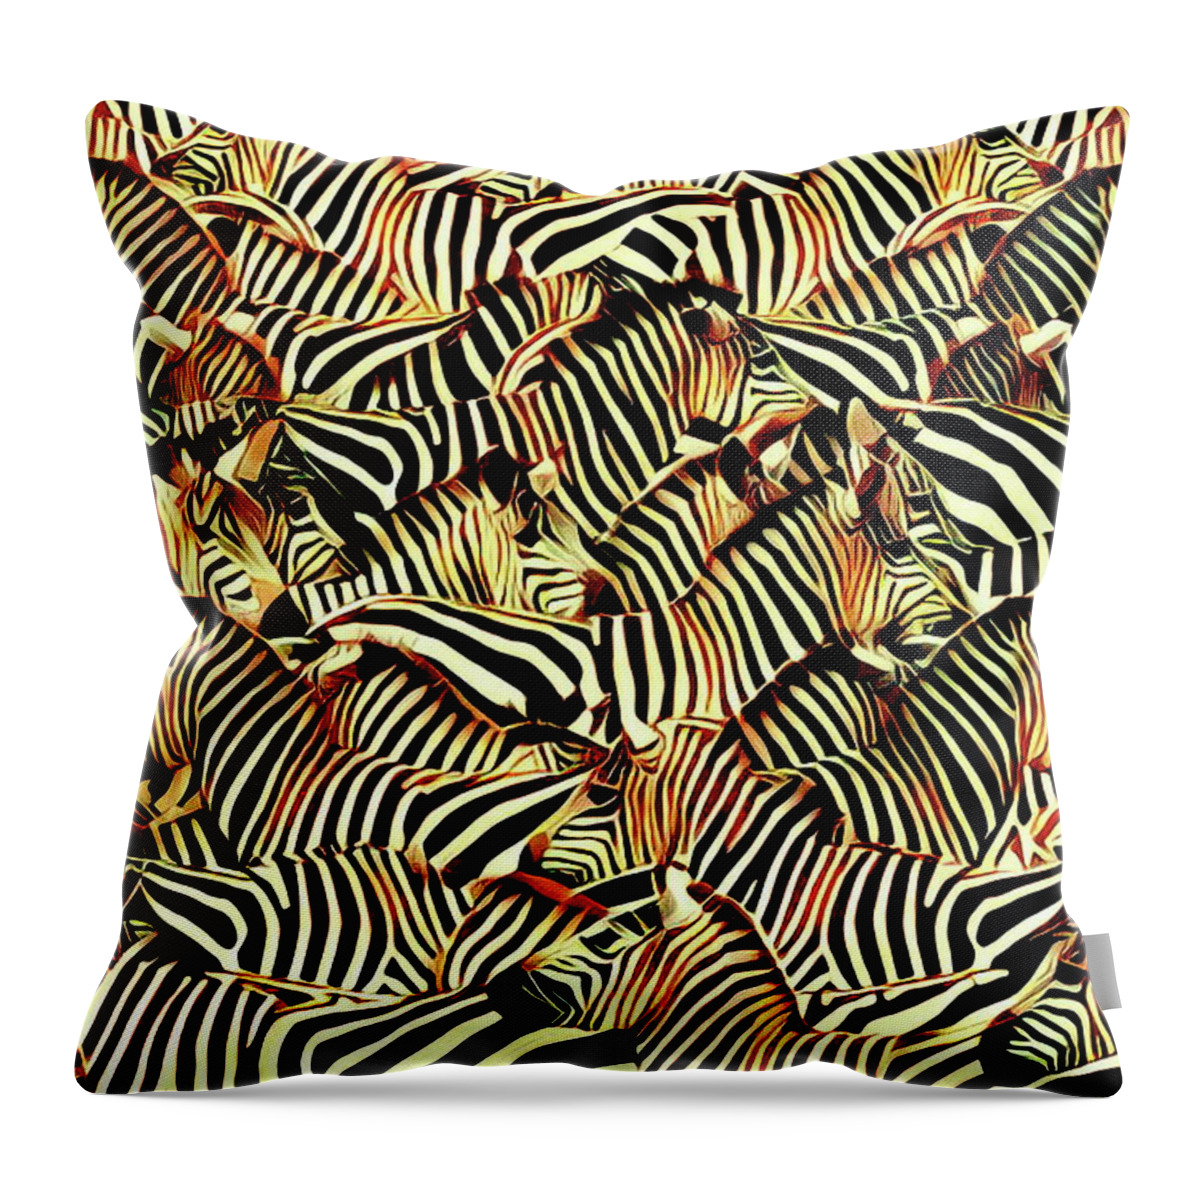 Zebra Throw Pillow featuring the digital art Zebras by Russ Harris